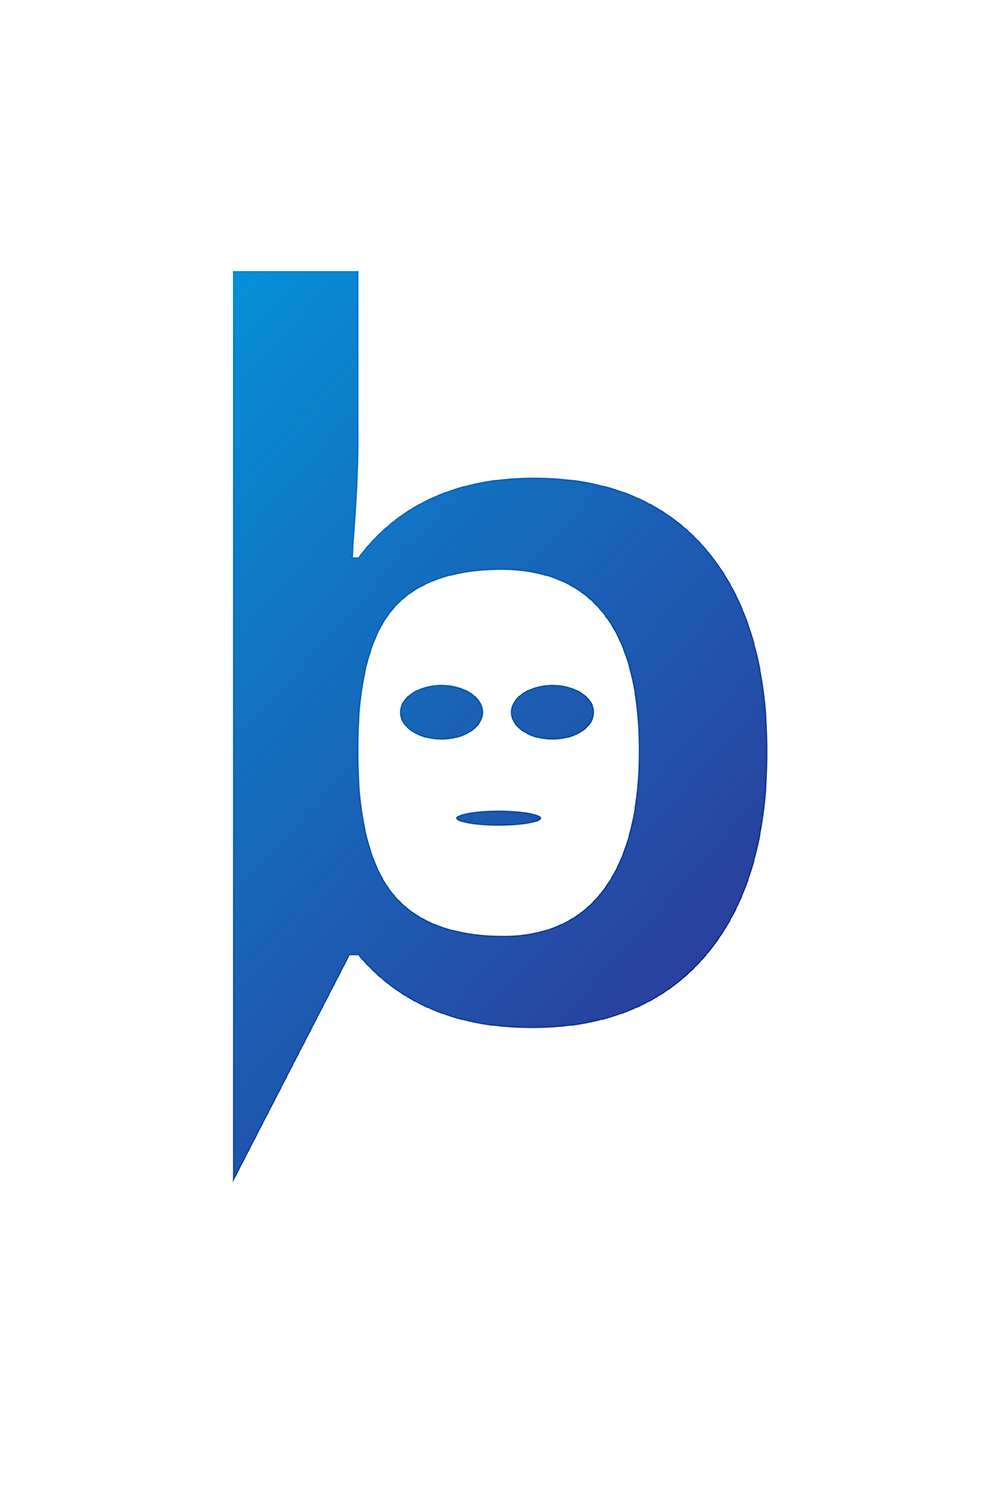 B Letter Logo pinterest preview image.